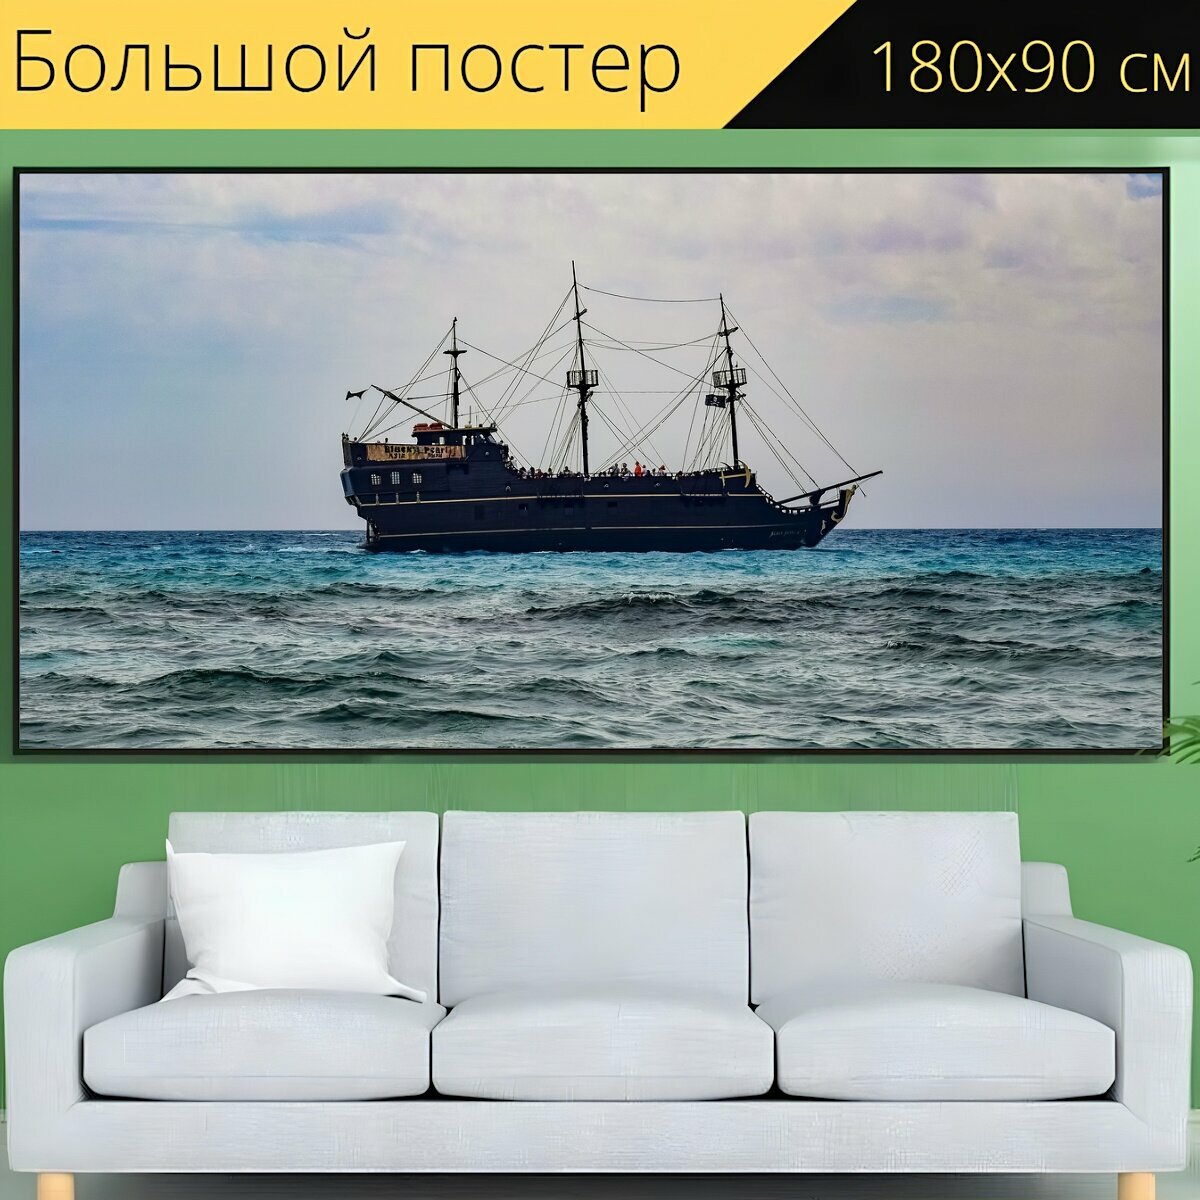 Большой постер "Море, судно, лодка" 180 x 90 см. для интерьера